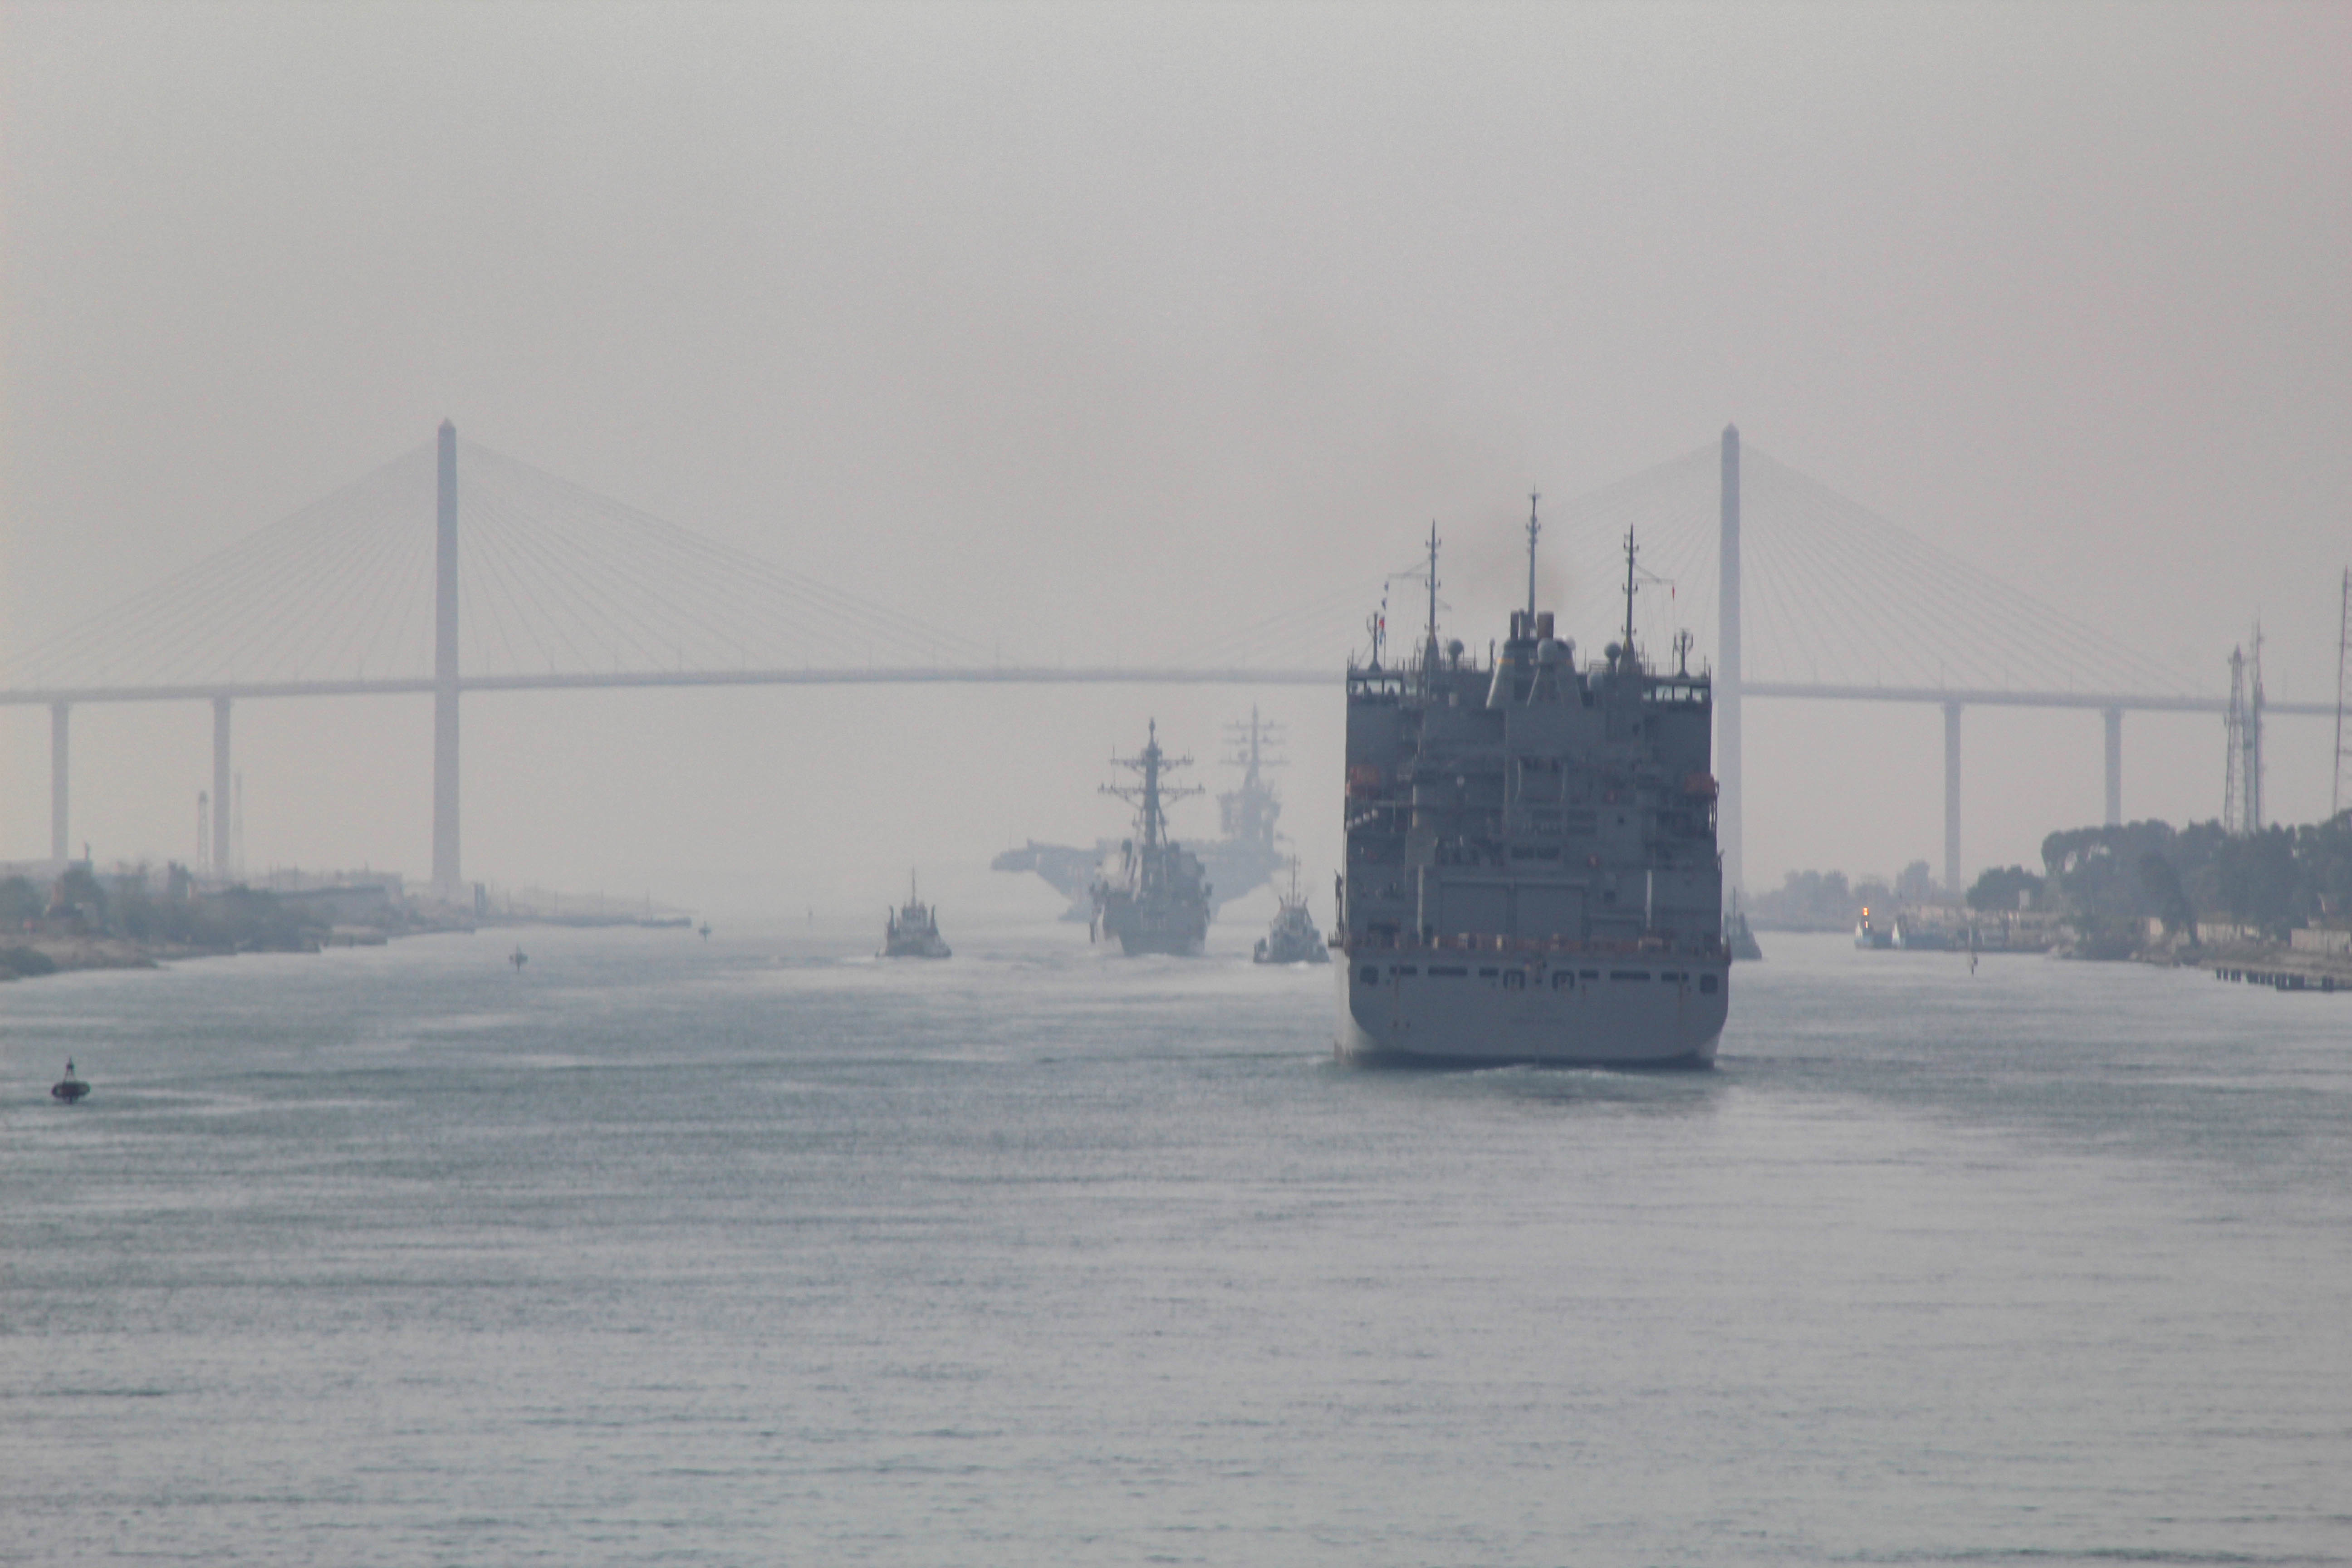 Американский атомный авианосец USS Dwight D. Eisenhower (CVN 69) и корабли его АУГ преодолевают Суэцкий канал в южном направлении, фото сделано 9 марта 2020 года